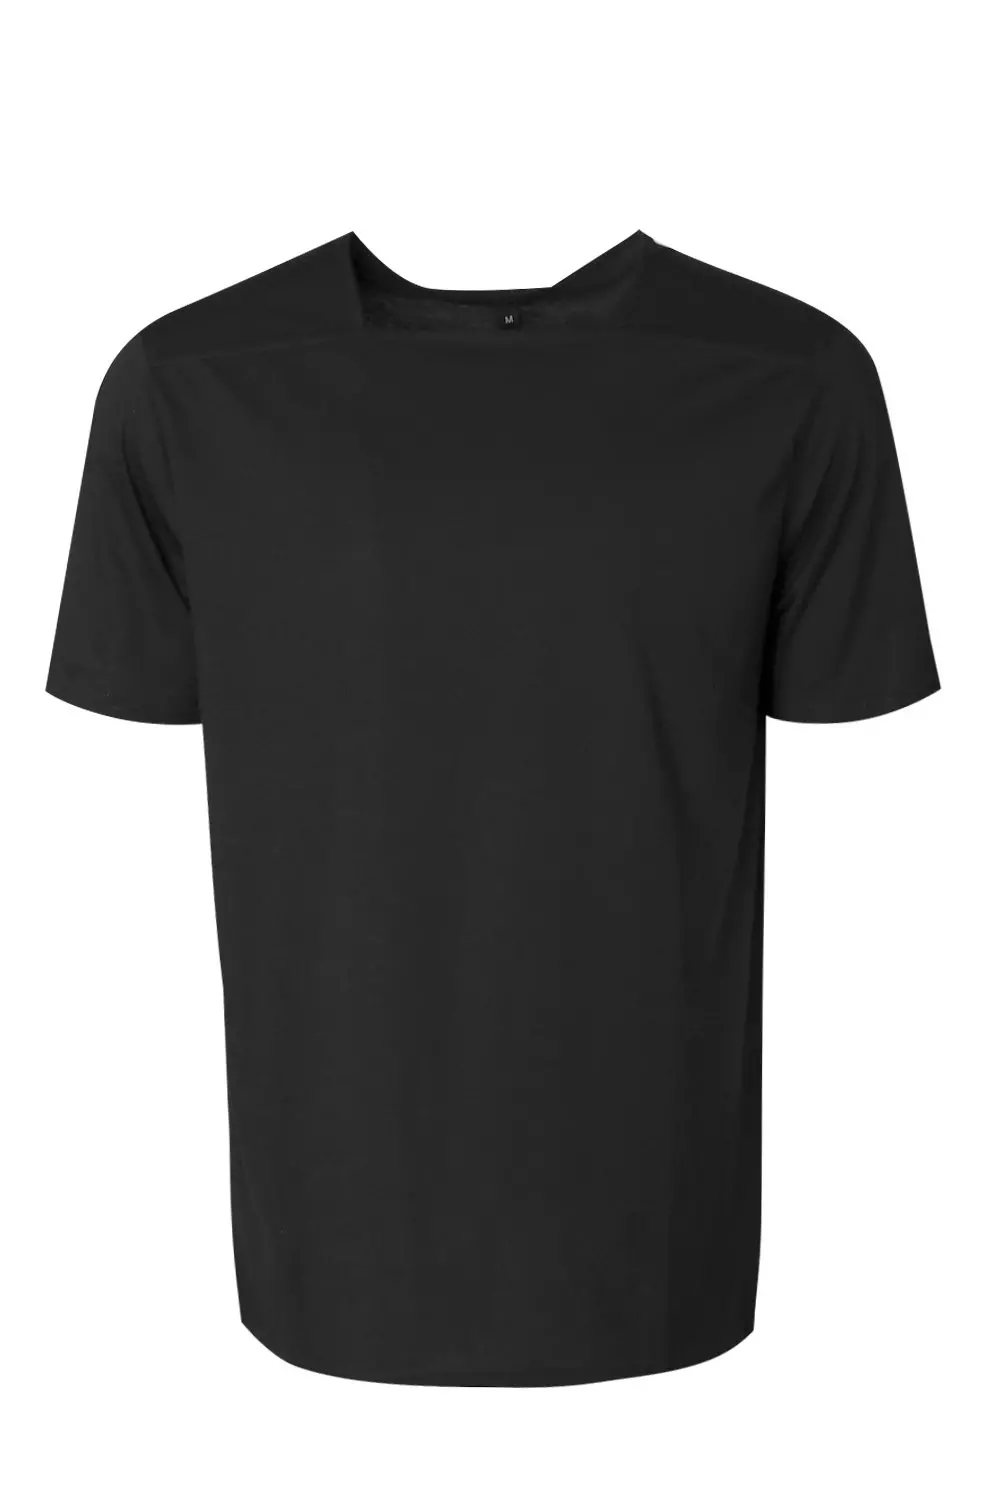 Men`s t-shirt Color black - SINSAY - 6862D-99X